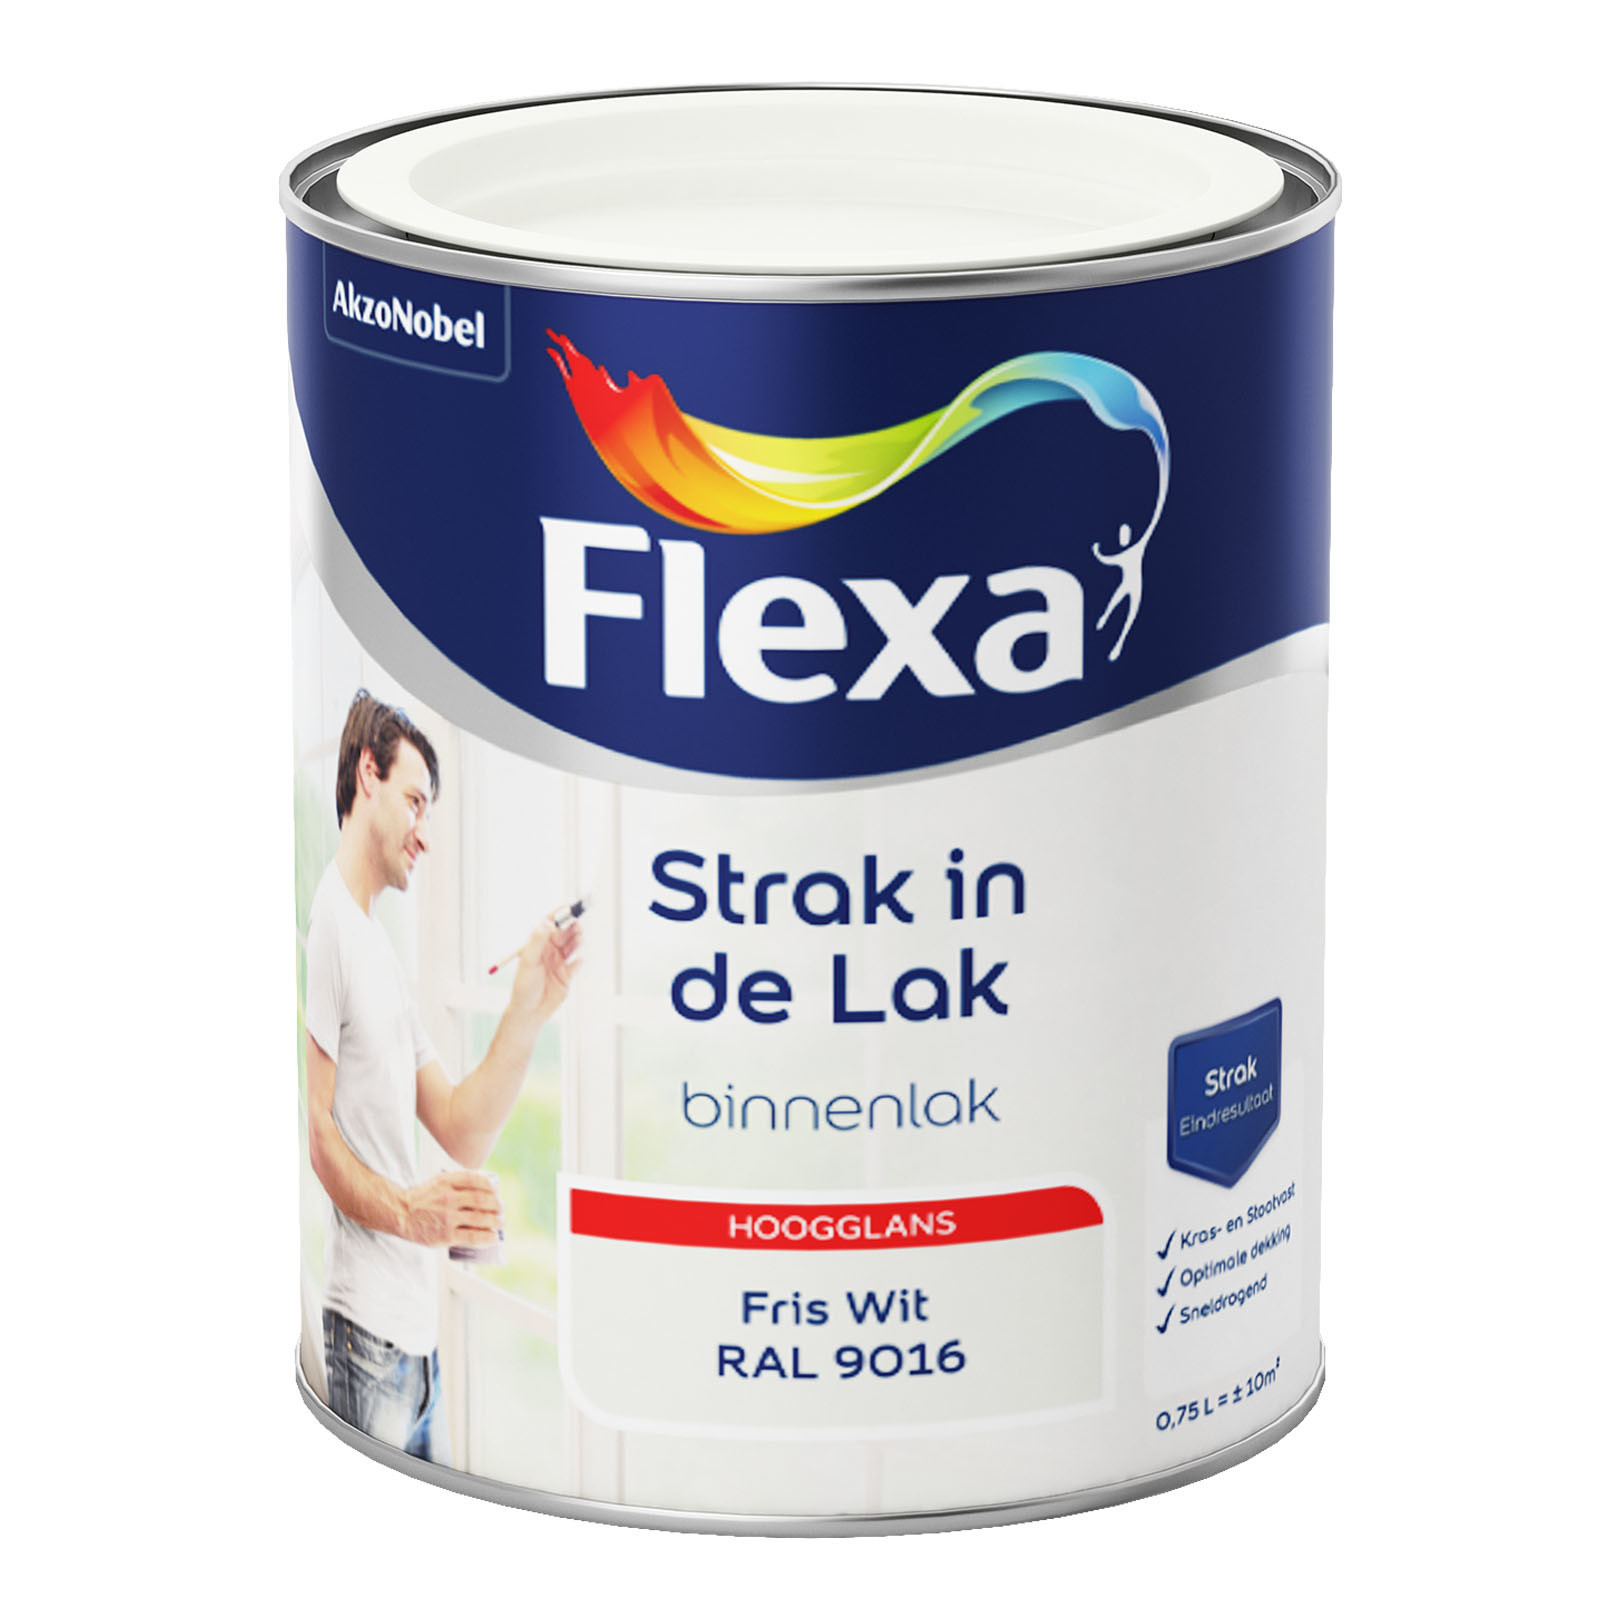 Flexa Strak in de Lak Binnenlak Hoogglans - Fris Wit - RAL 9016